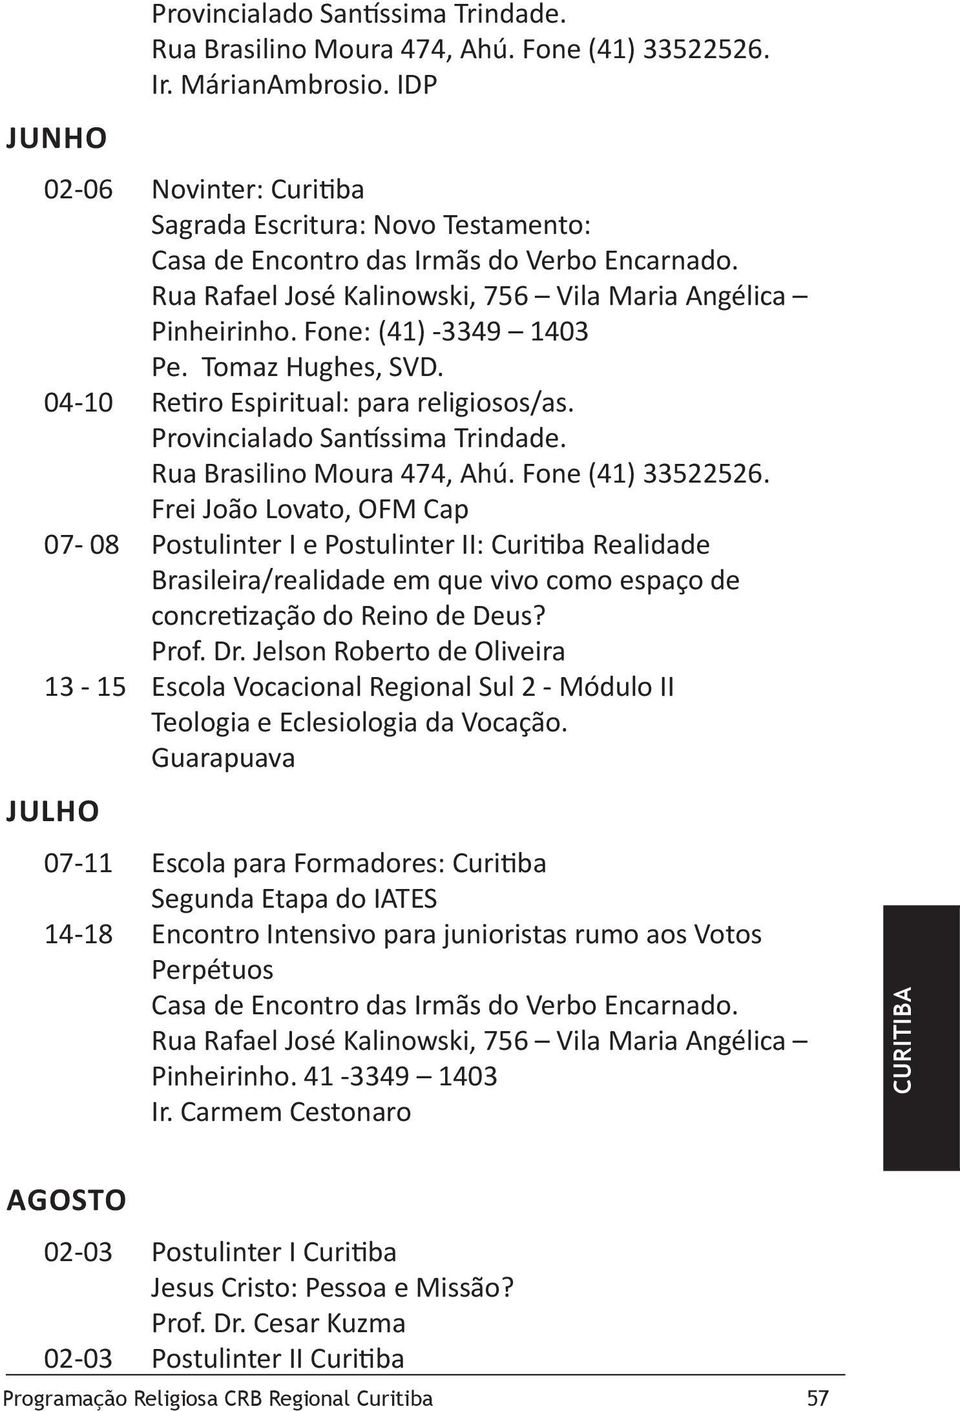 Frei João Lovato, OFM Cap 07-08 Postulinter I e Postulinter II: Curitiba Realidade Brasileira/realidade em que vivo como espaço de concretização do Reino de Deus? Prof. Dr.